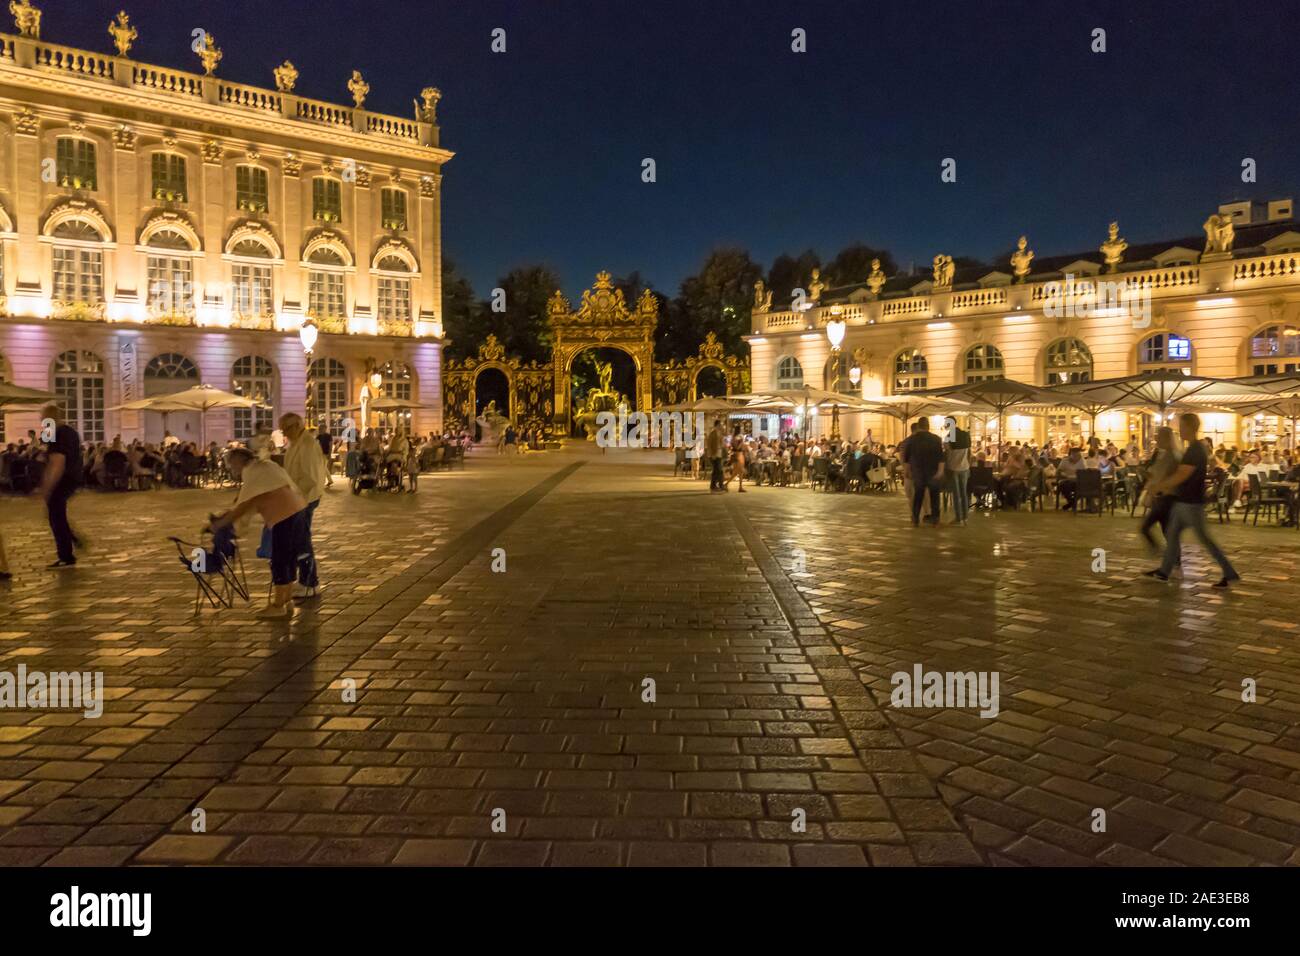 Nancy, Francia - 30 de agosto de 2019: Los turistas y lugareños caminando en la plaza la Plaza Stanislas en Nancy, Lorena, Francia Foto de stock